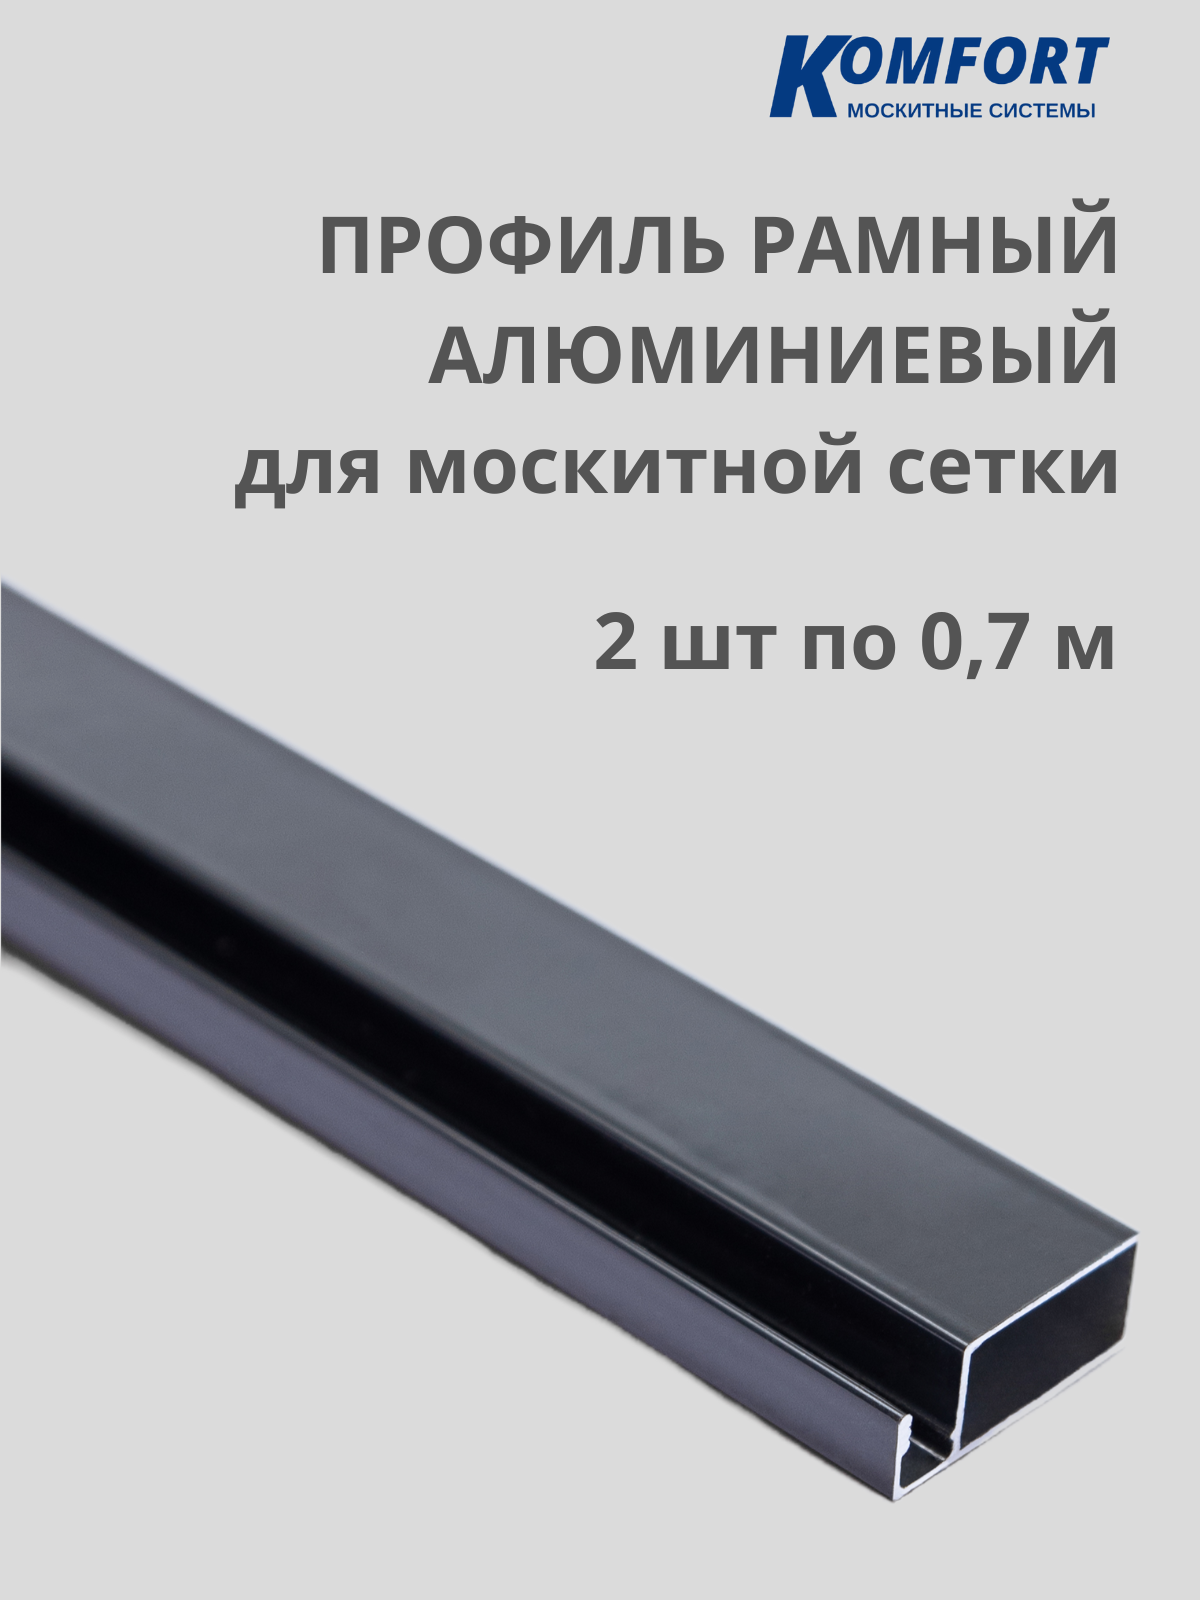 Профиль для москитной сетки Рамный алюминиевый серый 0,7 м 2 шт